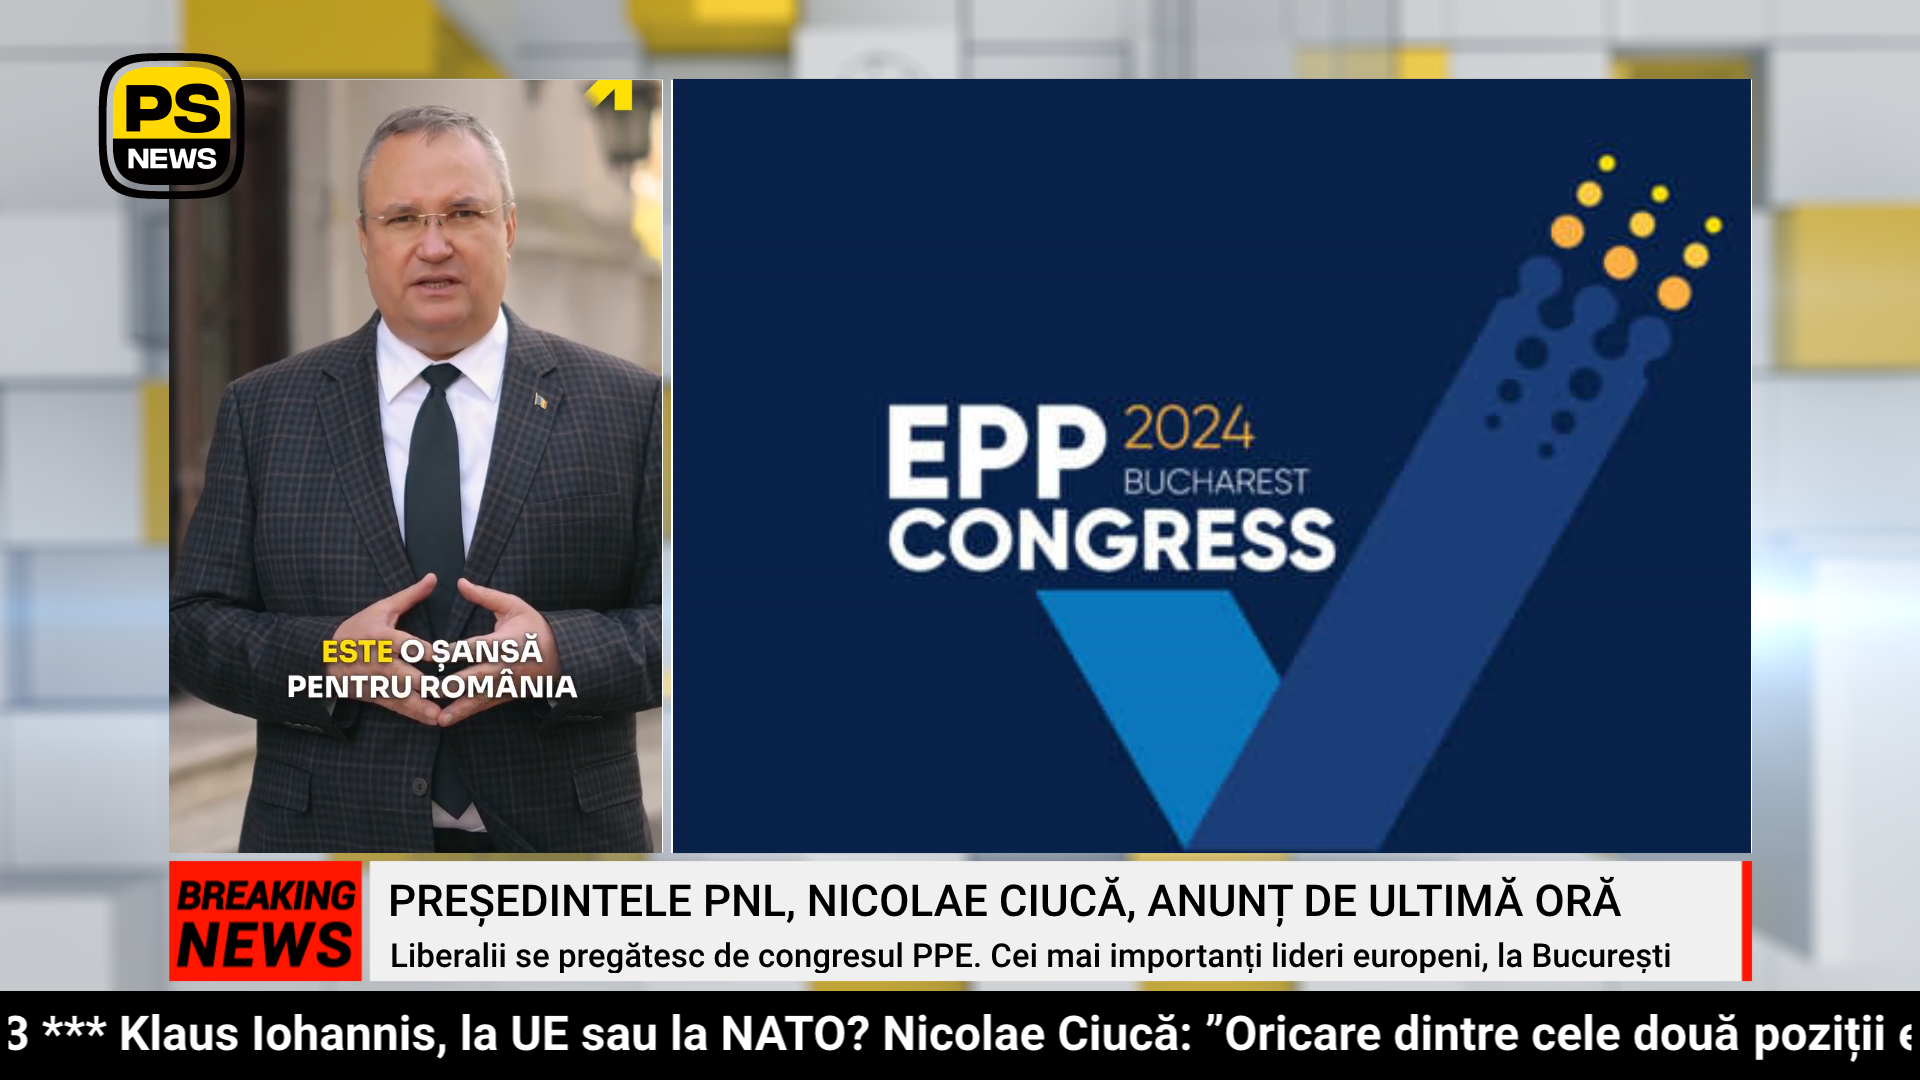 PS News TV | Pregătiri intense pentru congresul PPE de la București